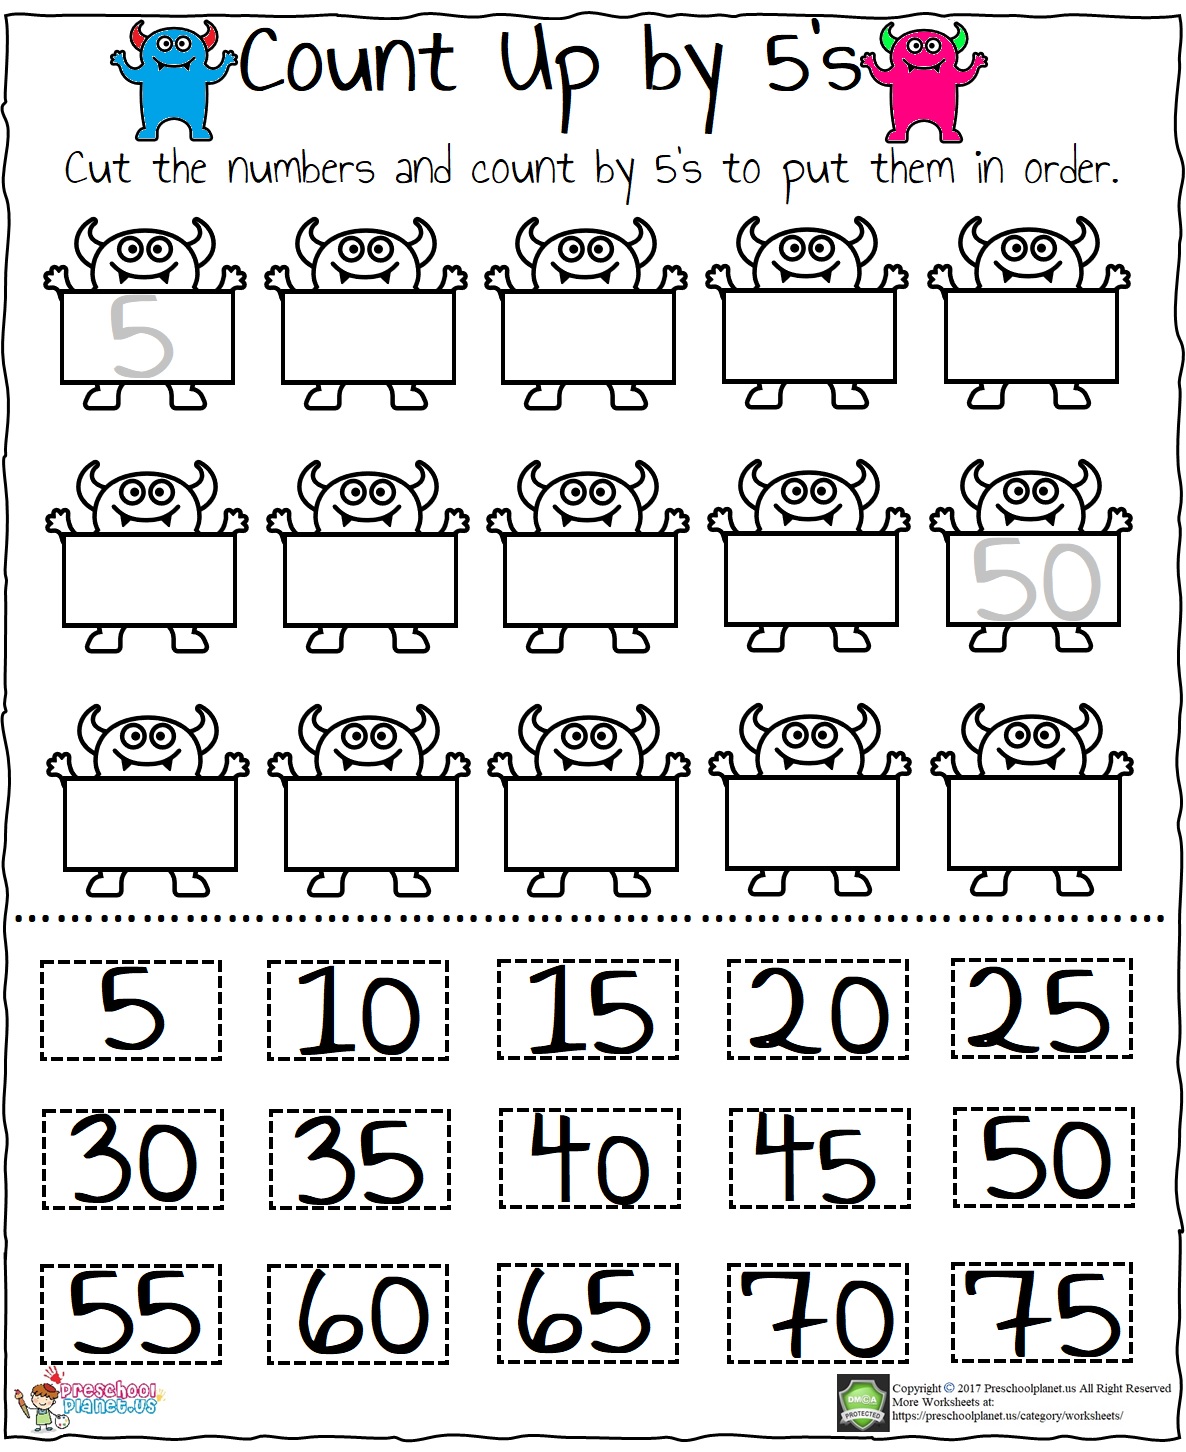 skip-counting-by-5-s-worksheet-preschoolplanet